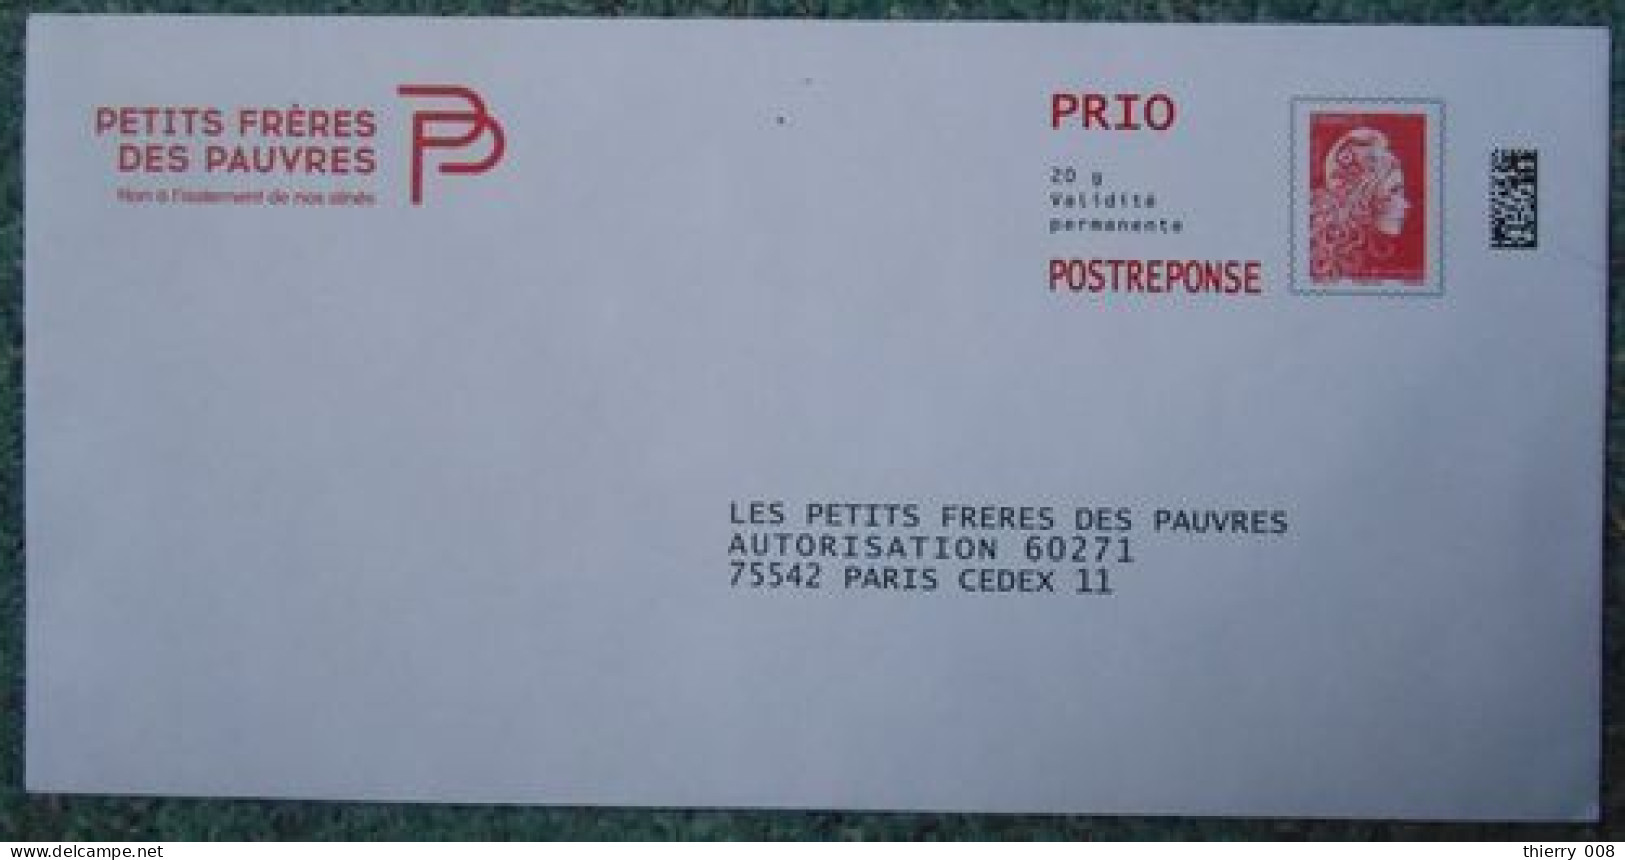 08 Enveloppe PAP Prêt à Poster Réponse  Marianne L'Engagée  PRIO  Petits Frères Des Pauvres - Prêts-à-poster:reply